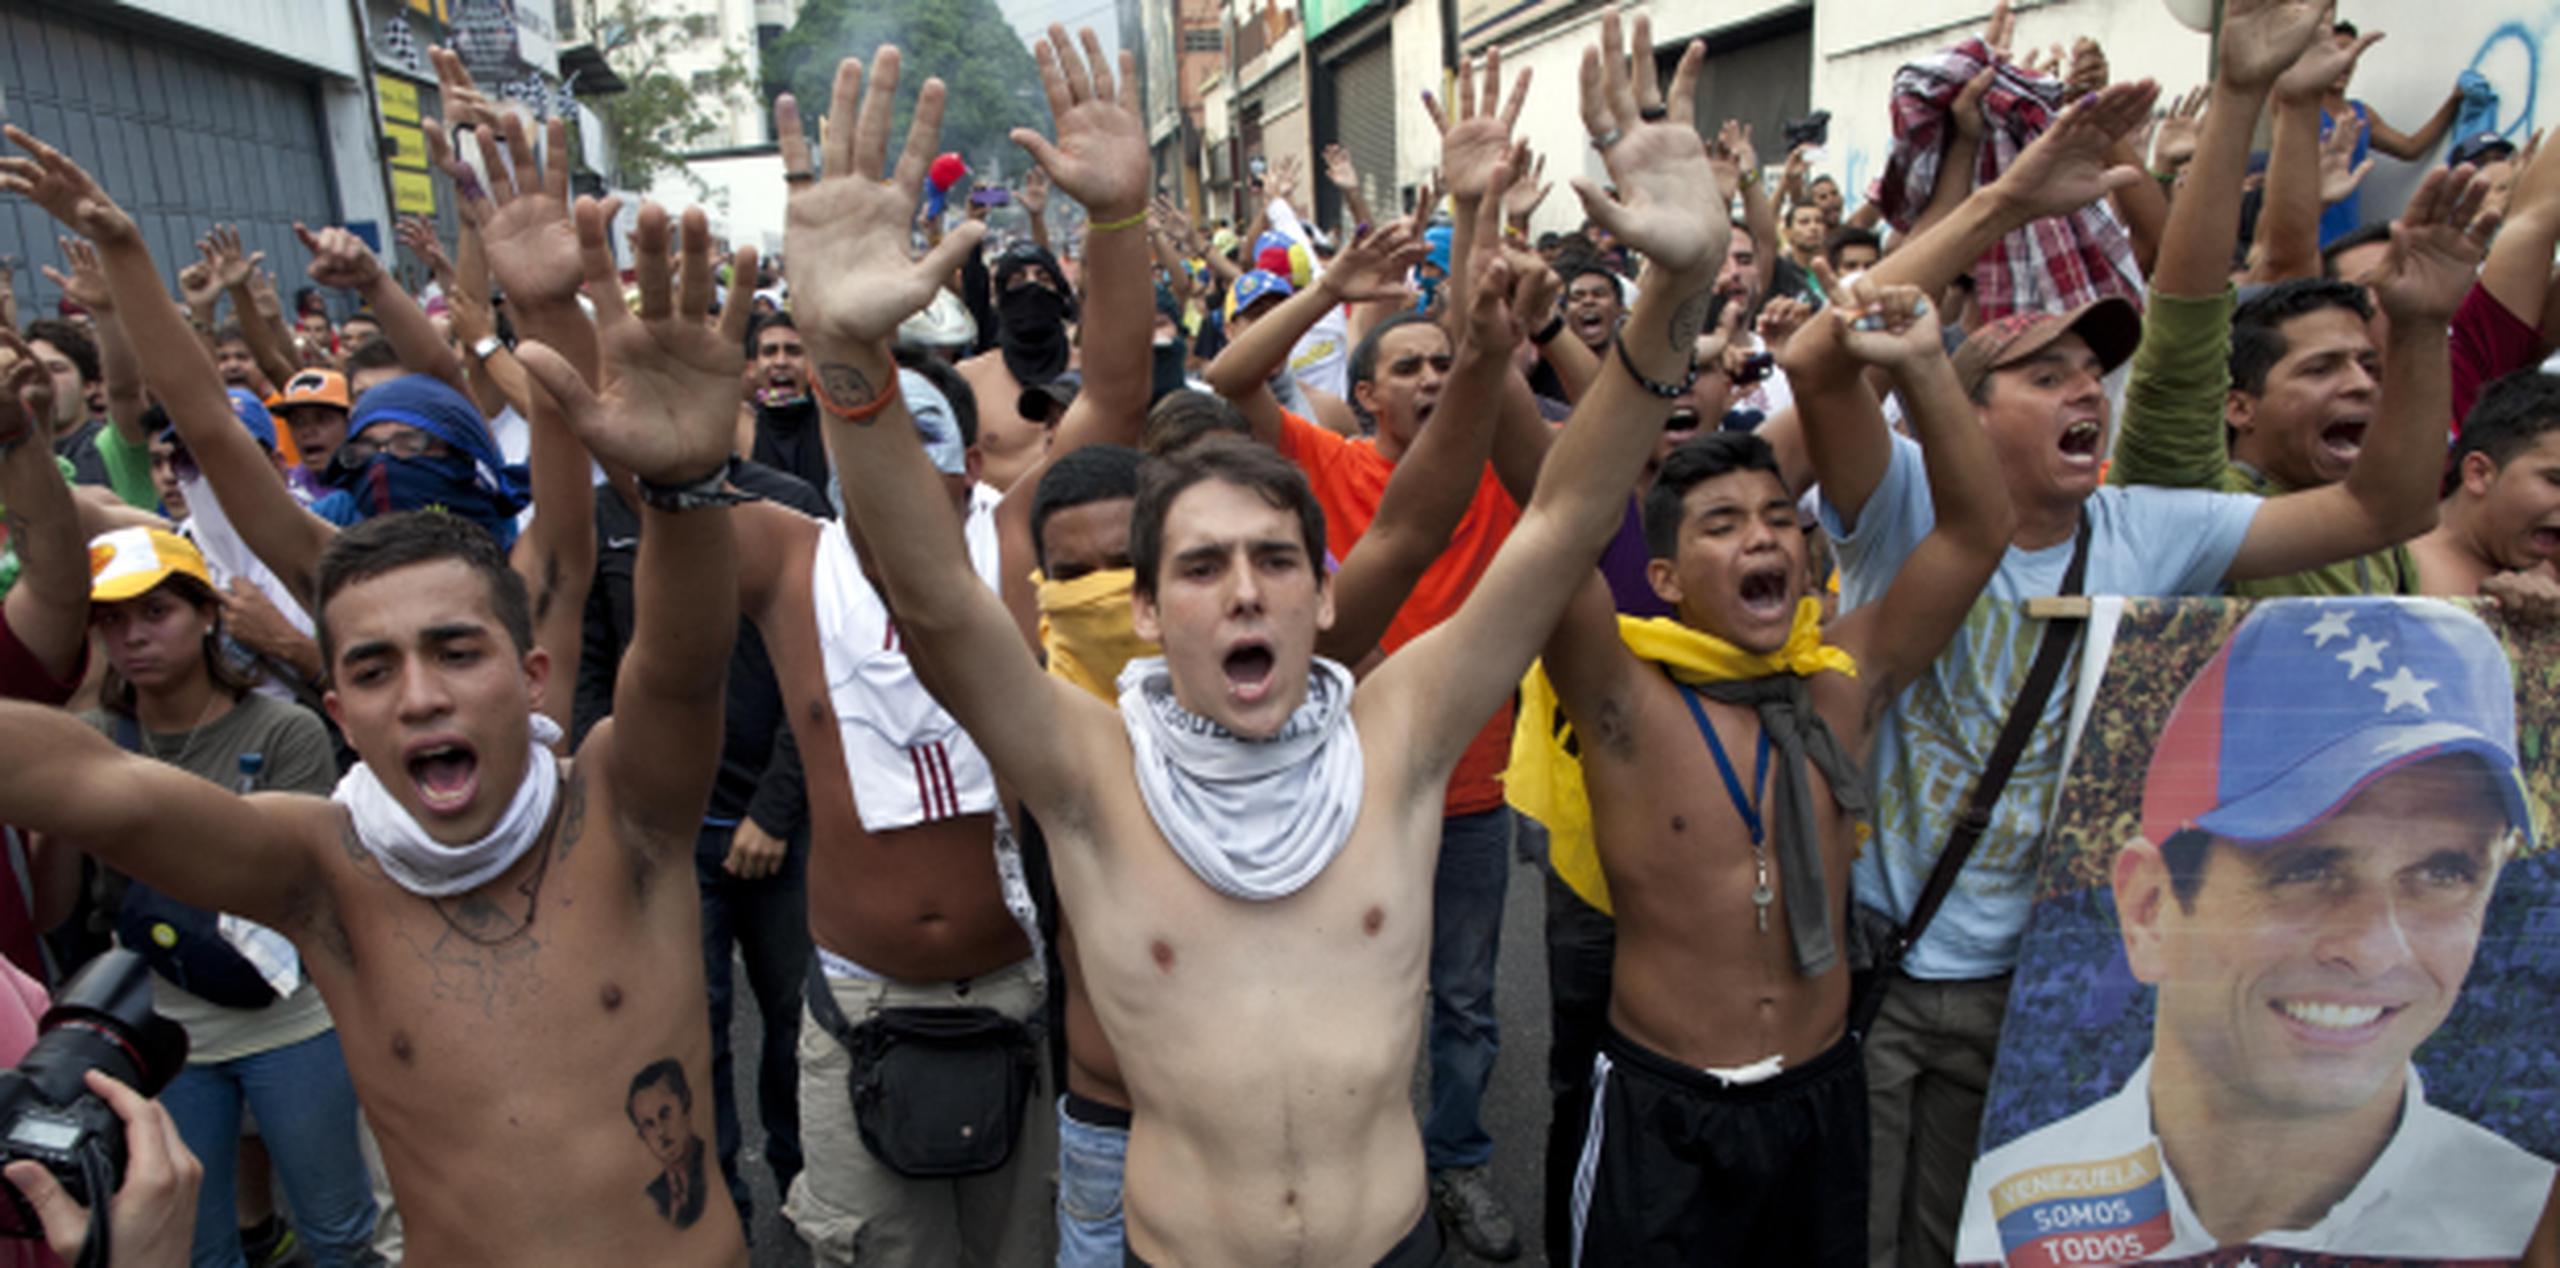 En al menos una de las marchas opositoras del martes las autoridades arrojaron gas lacrimógeno a los manifestantes. (AP/ Ramón Espinosa)